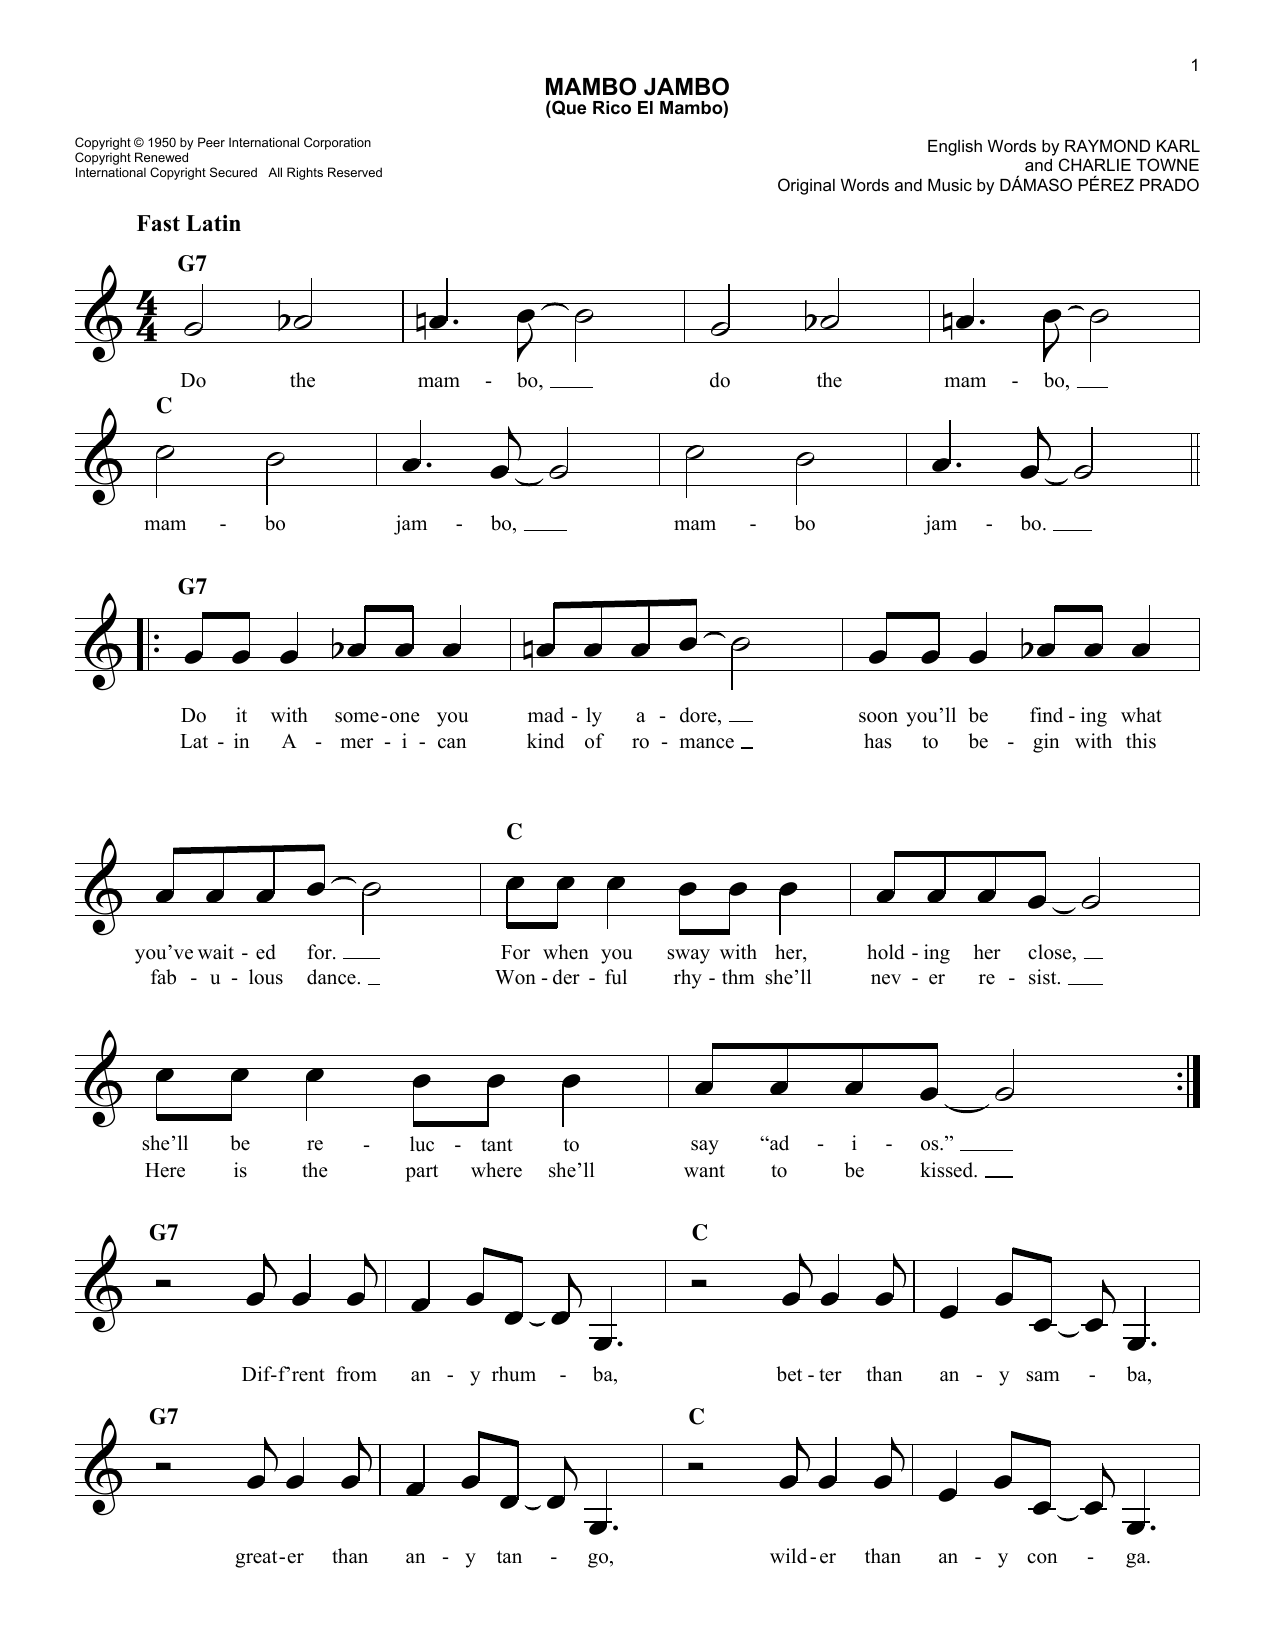 Damaso Perez Prado Mambo Jambo (Que Rico El Mambo) Sheet Music Notes & Chords for Melody Line, Lyrics & Chords - Download or Print PDF